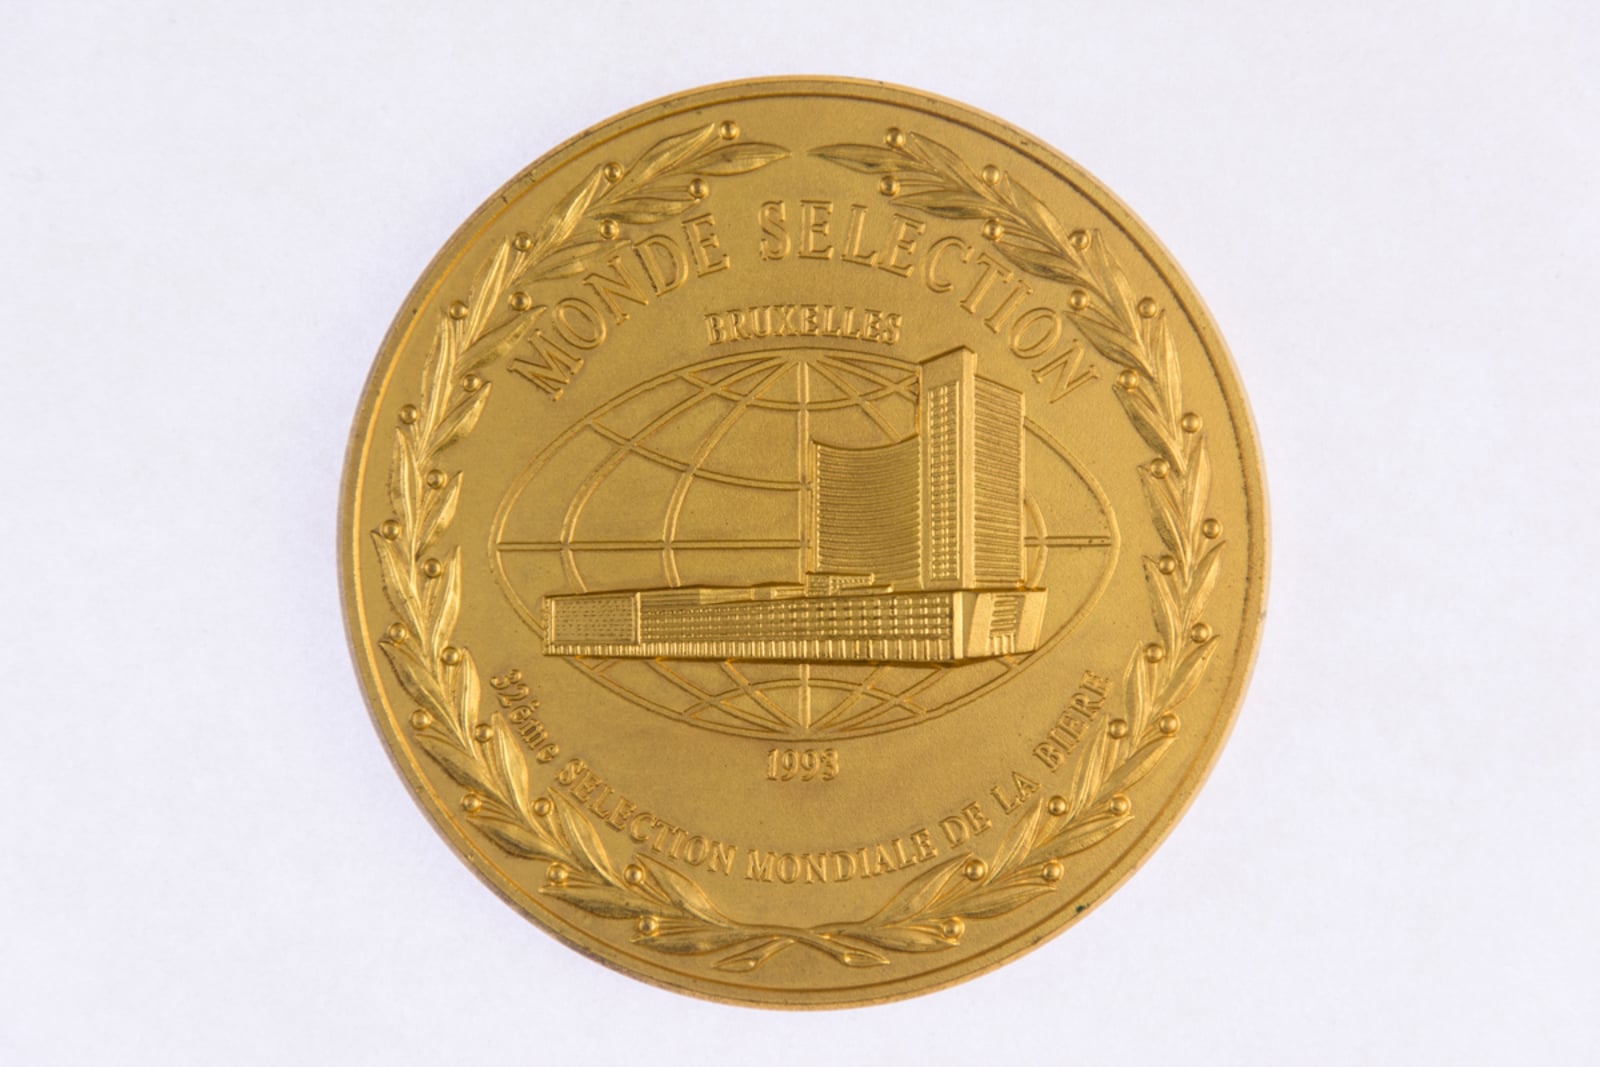 Monde Selection Bruxelles, Grande Medaille d'Or 1993